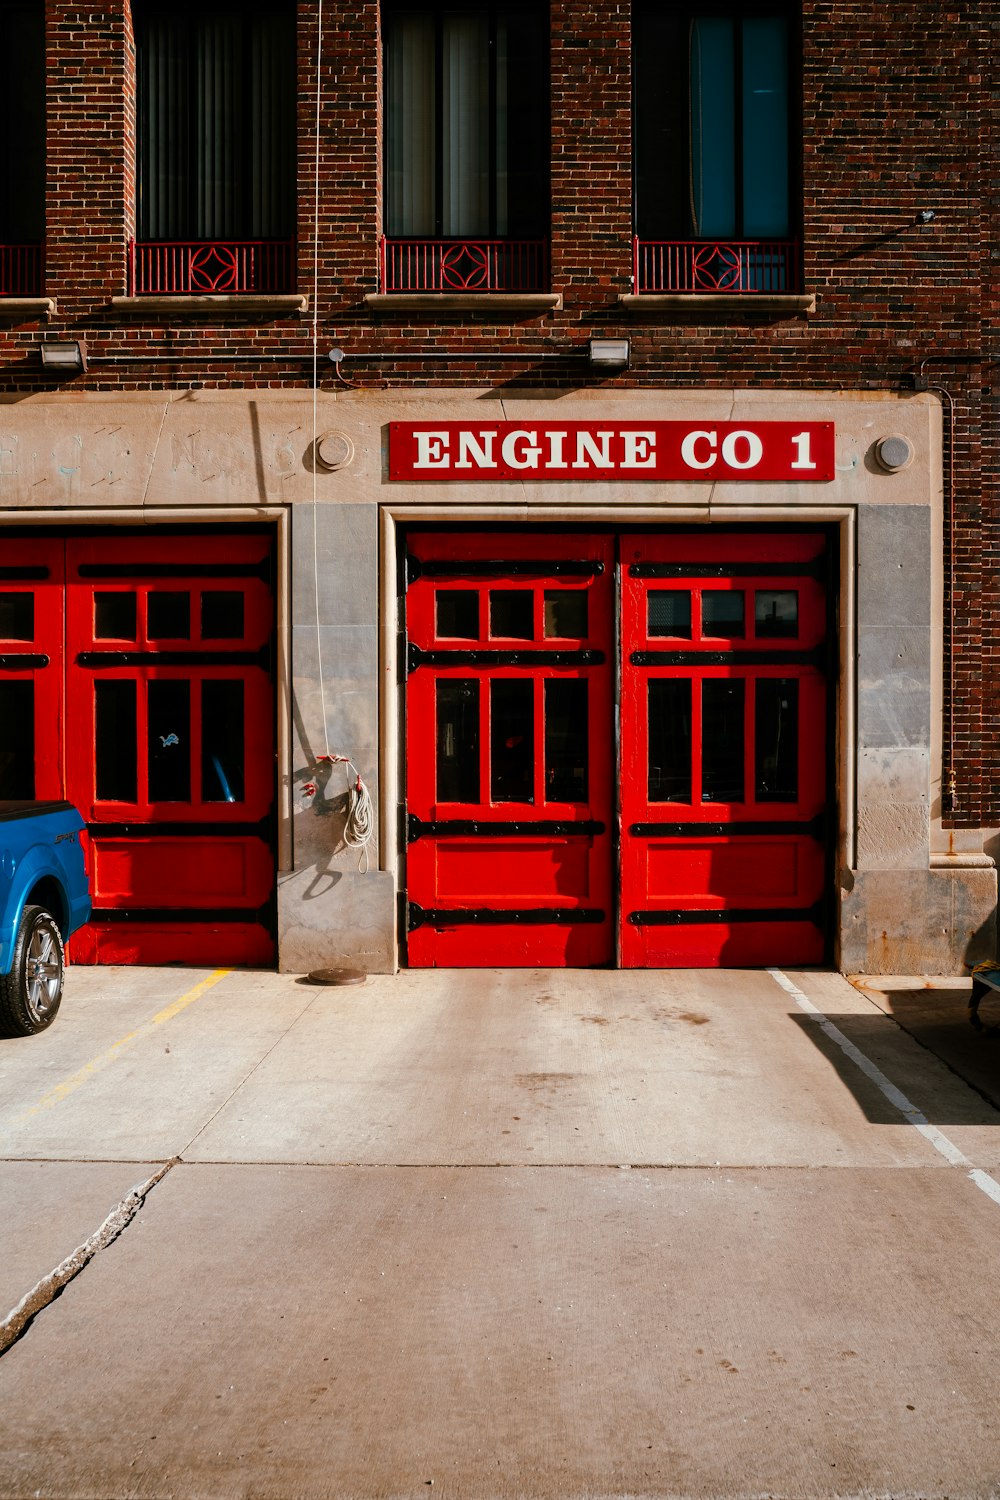 Un camión azul estacionado frente a una estación de bomberos roja